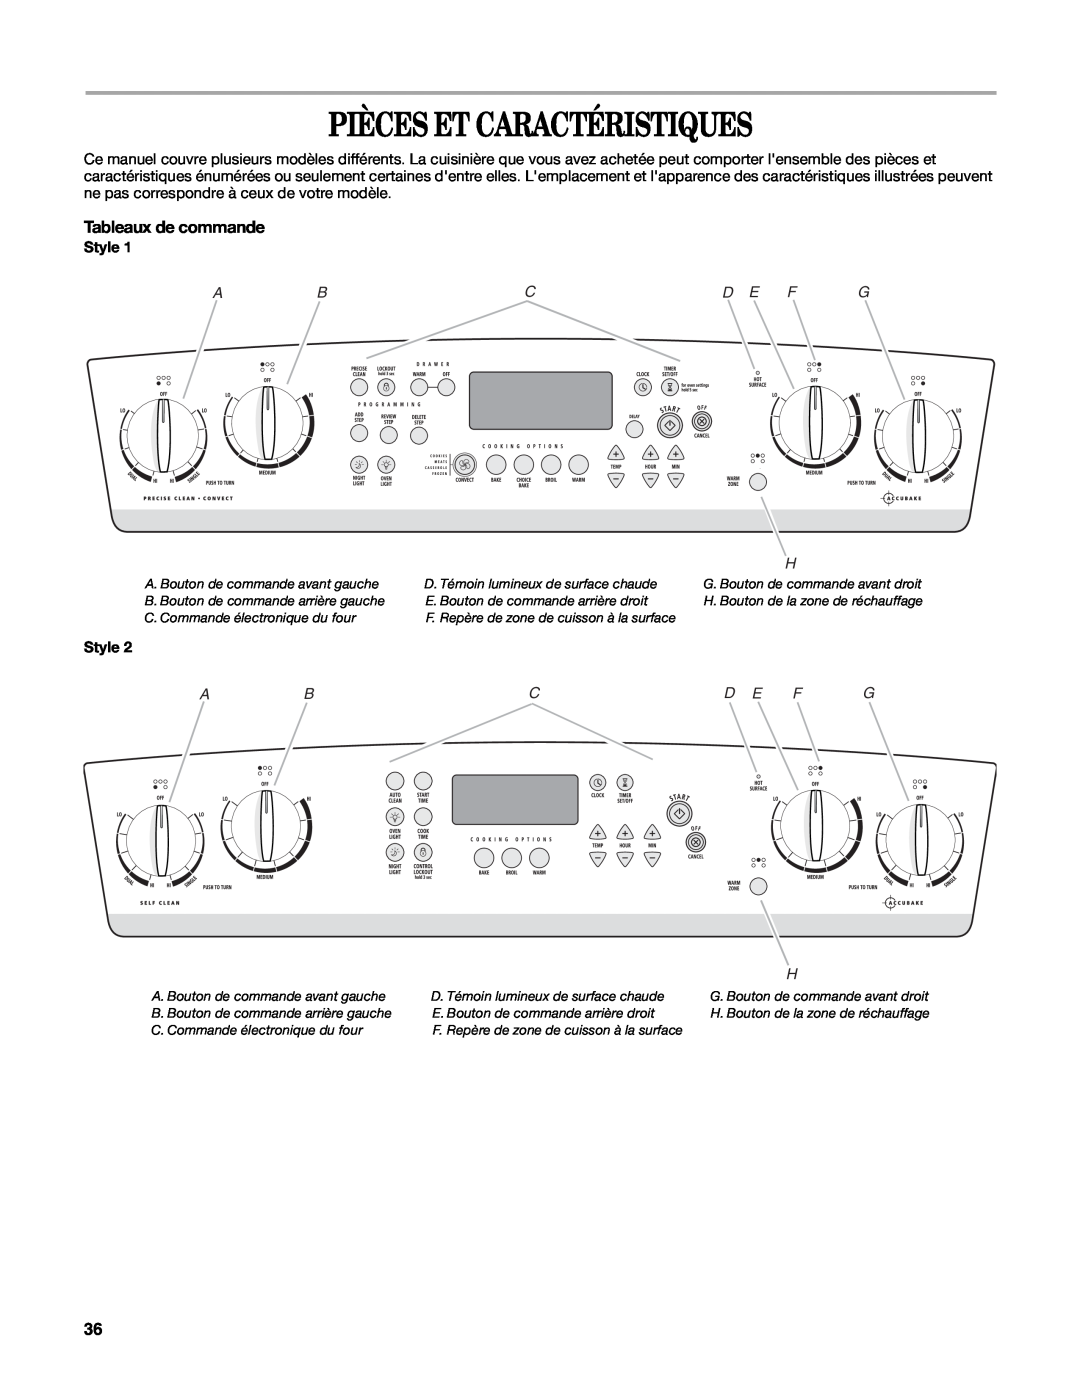 Whirlpool W10162205A manual Pièces Et Caractéristiques, Tableaux de commande, Abcd E F G, Style 